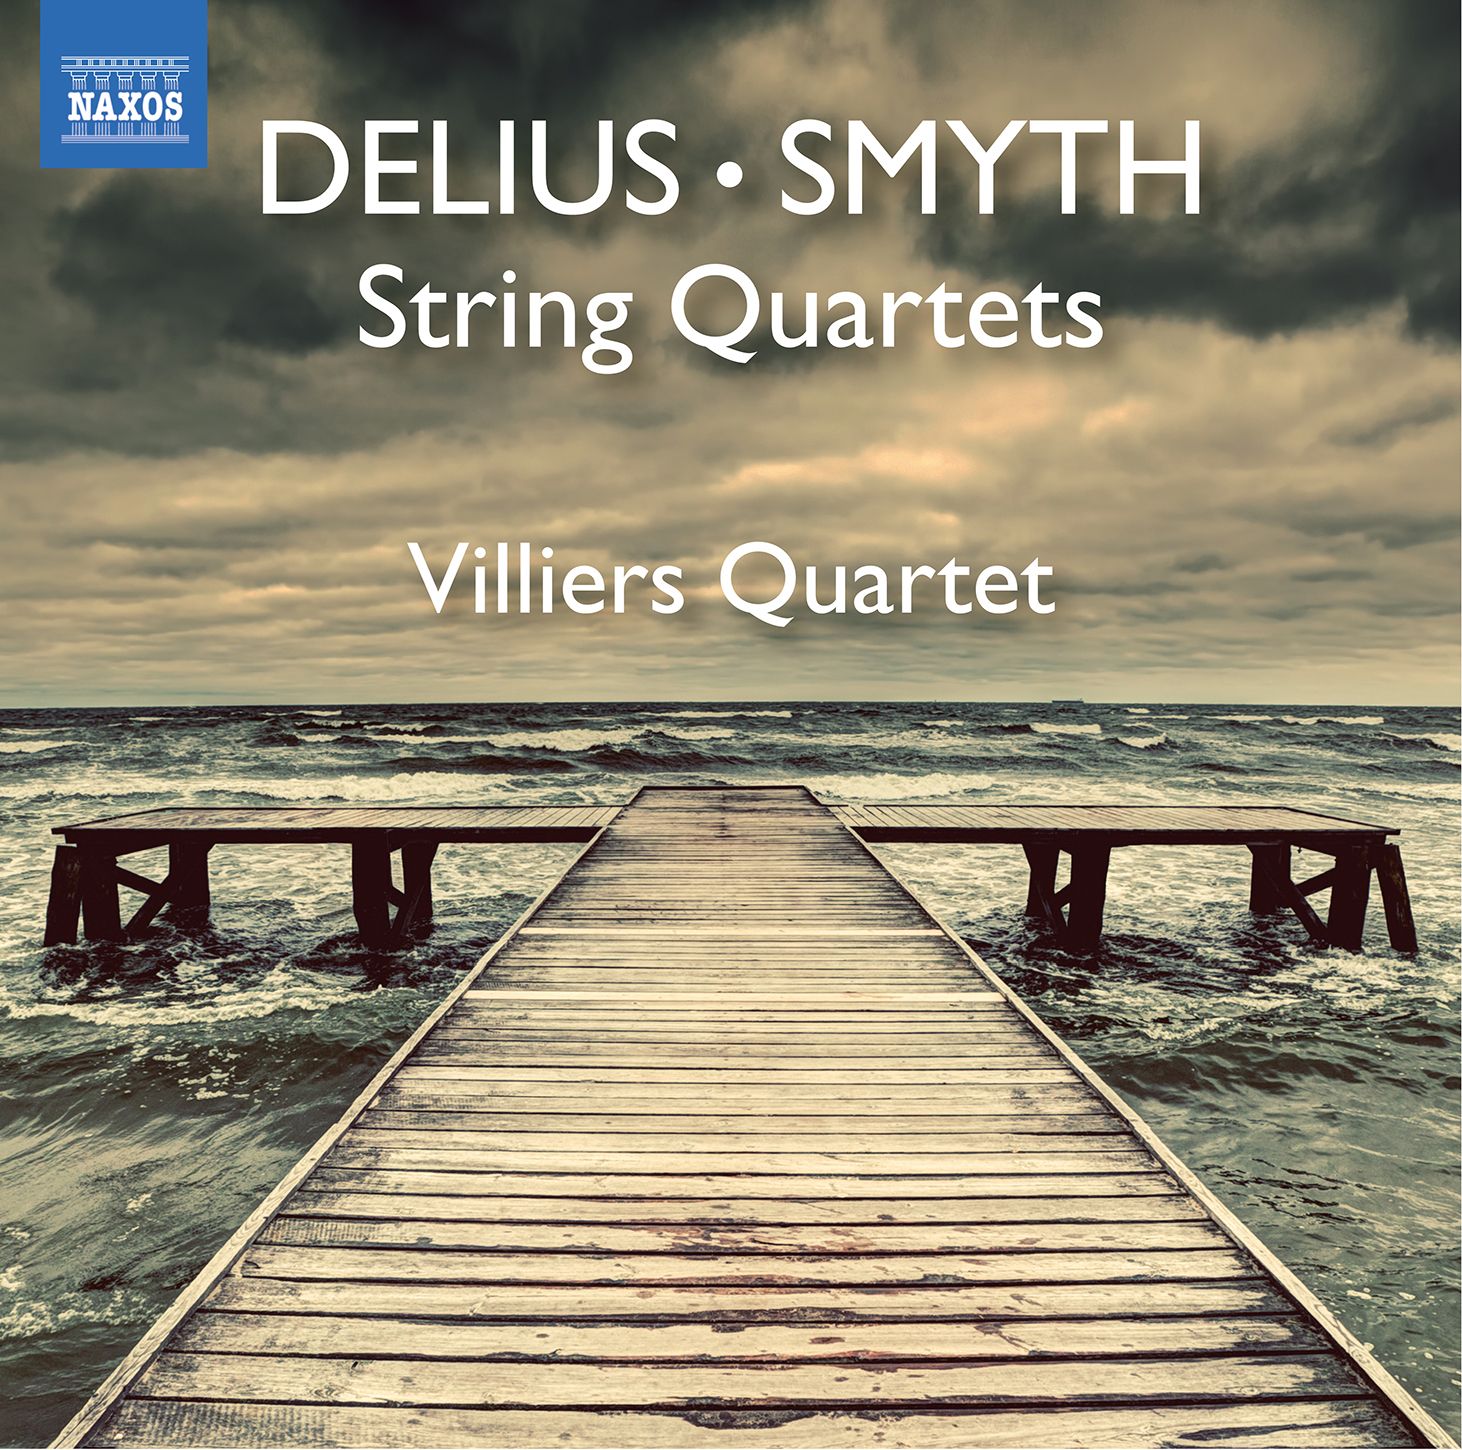 Ethel Smyth and Delius String Quartets